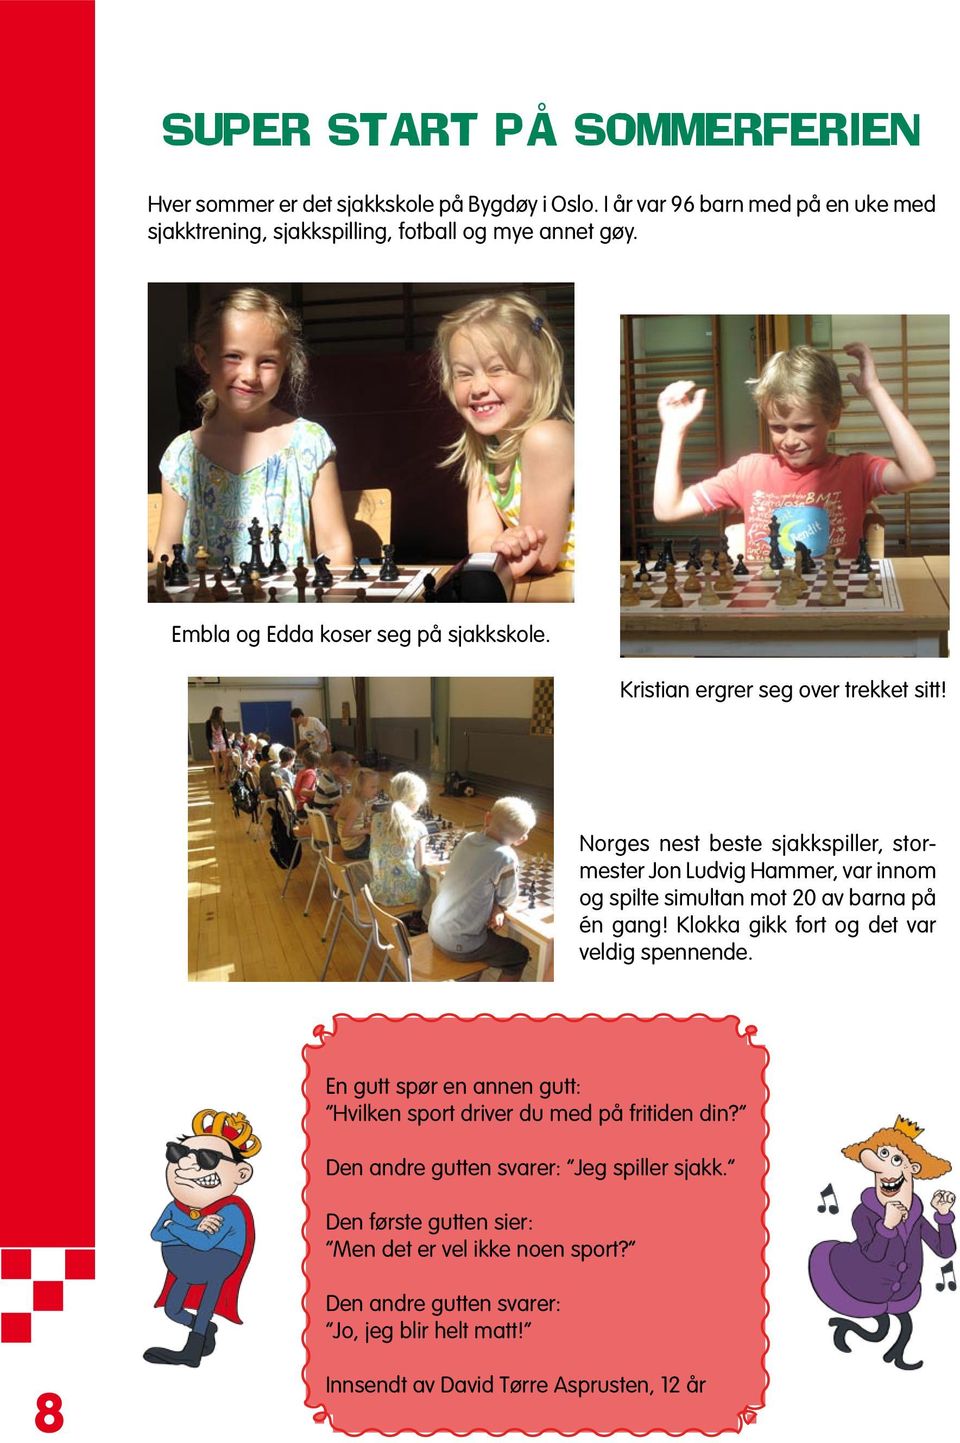 Norges nest beste sjakkspiller, stormester Jon Ludvig Hammer, var innom og spilte simultan mot 20 av barna på én gang! Klokka gikk fort og det var veldig spennende.